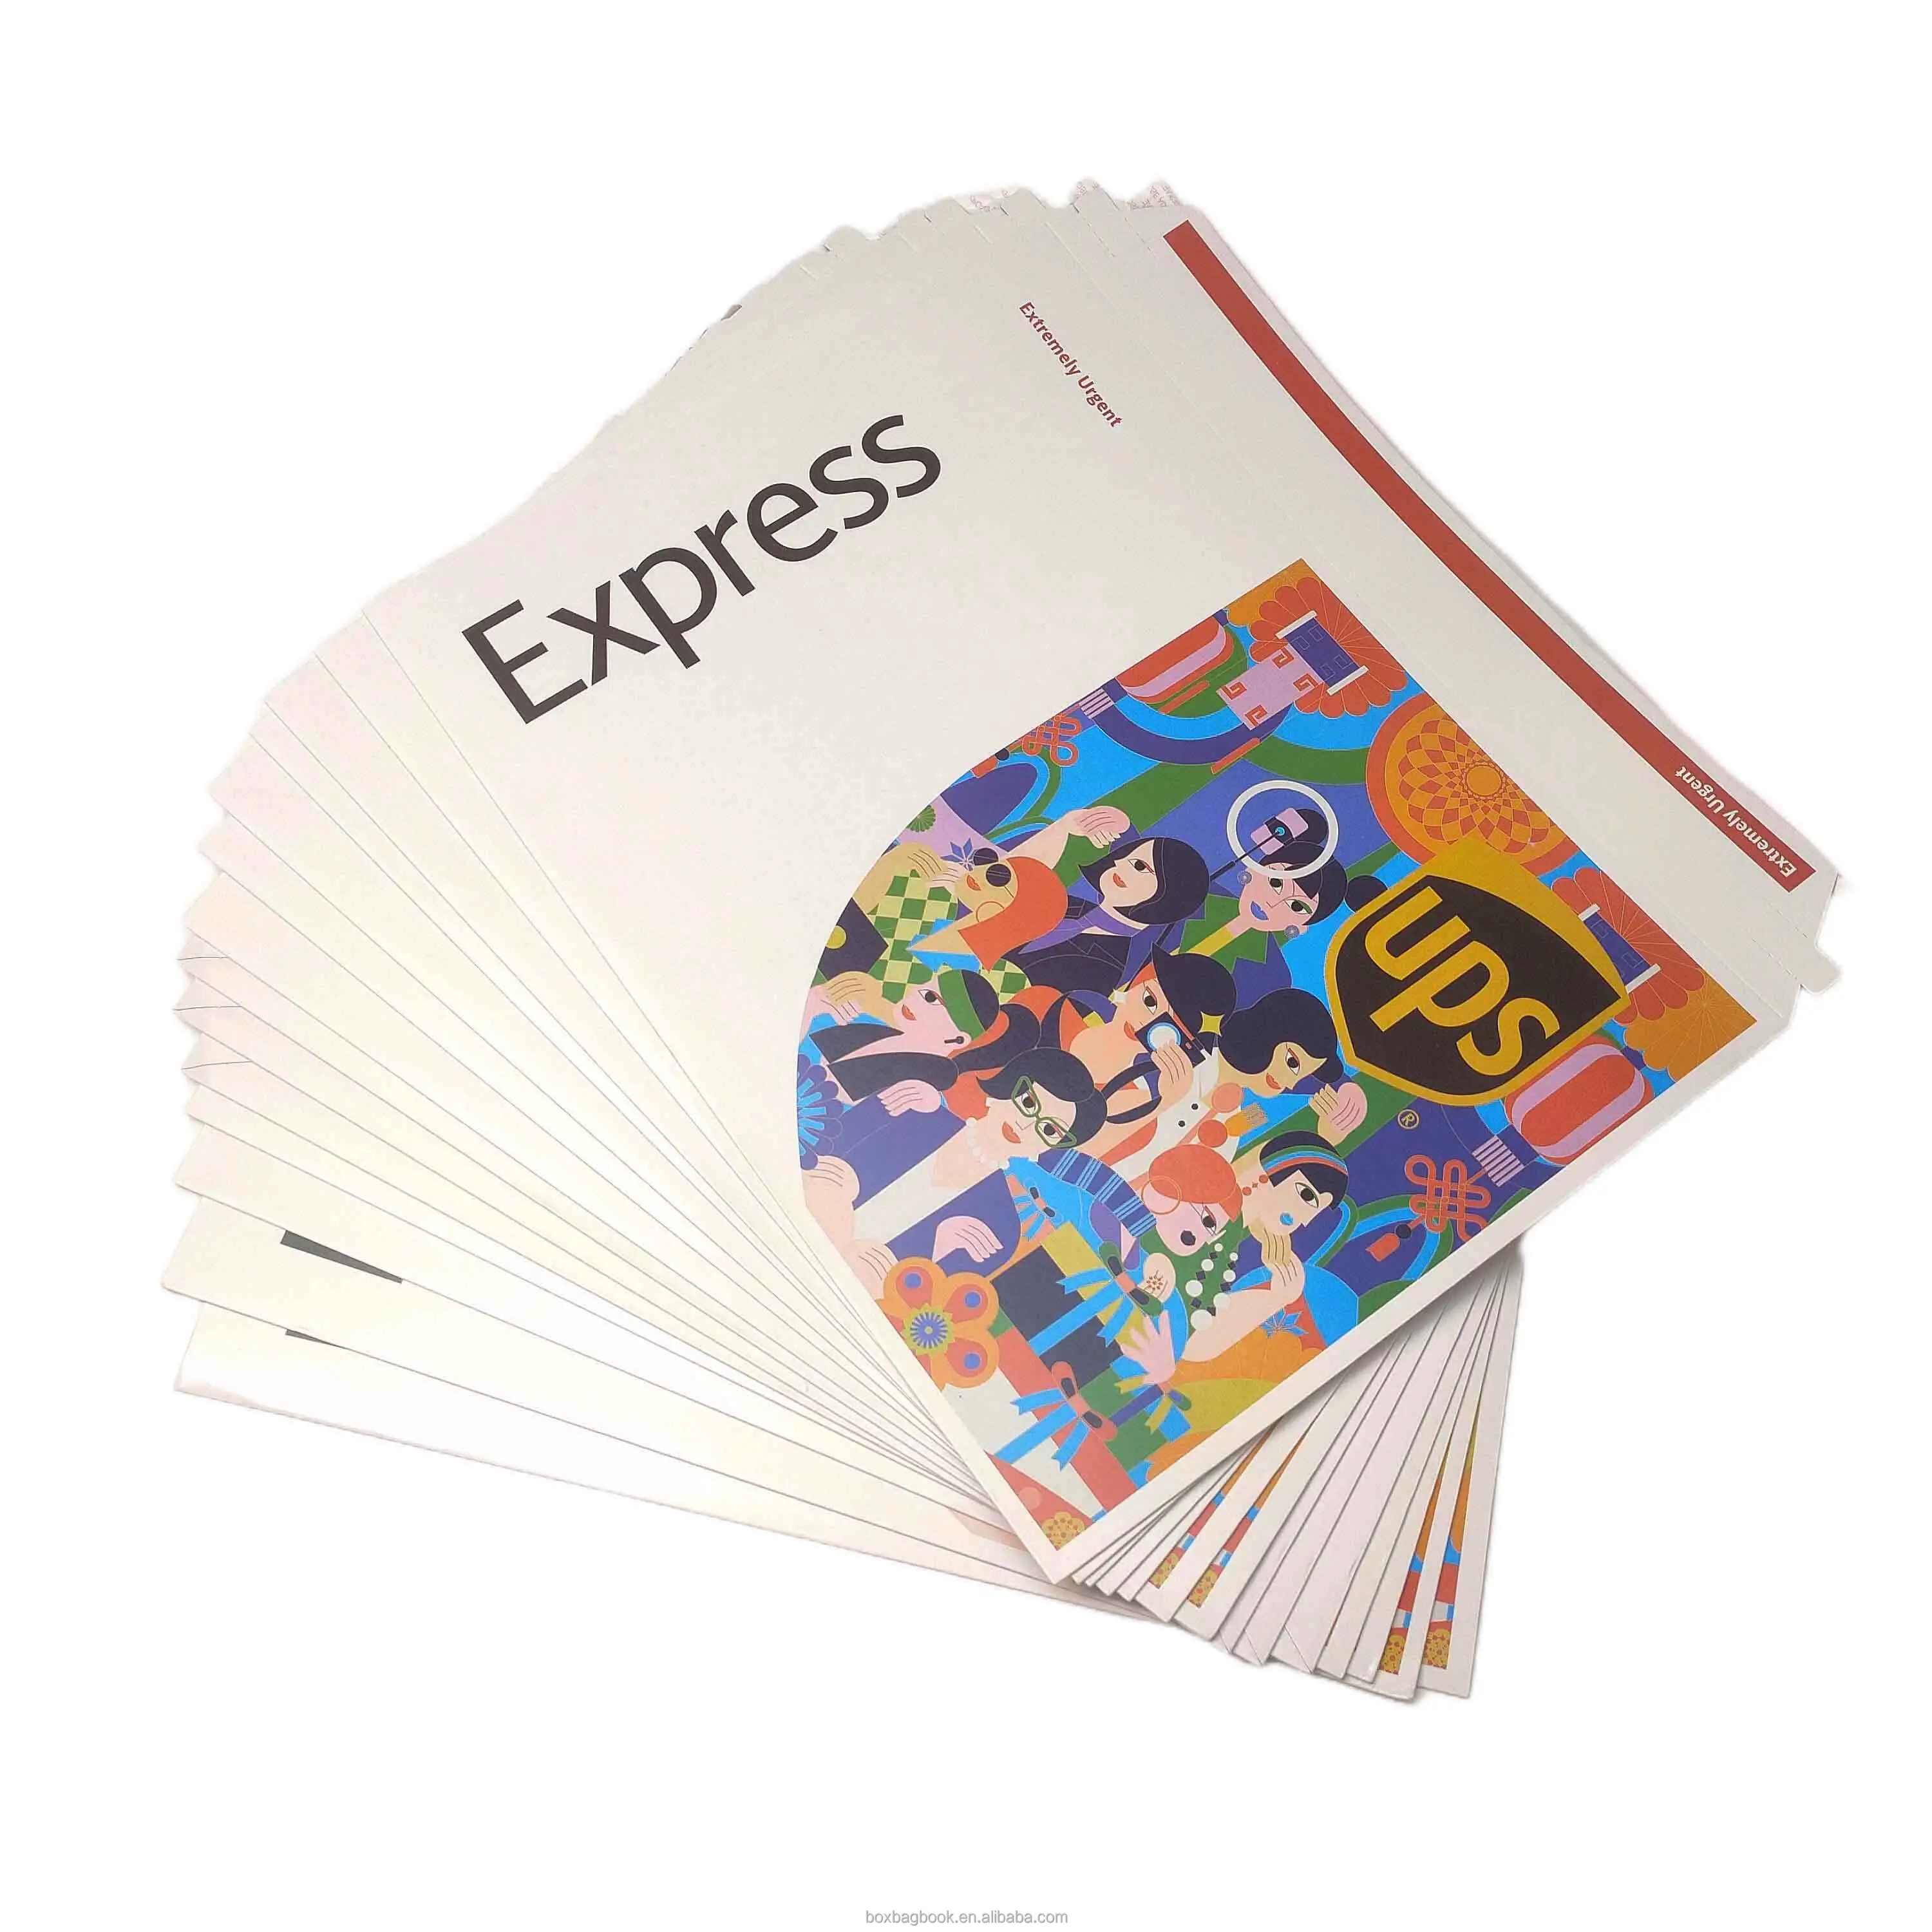 Sacos de envelopes de postagem personalizados de mailer, envelopes de embalagem eco amigável, envelopes expressos fechados com logotipo